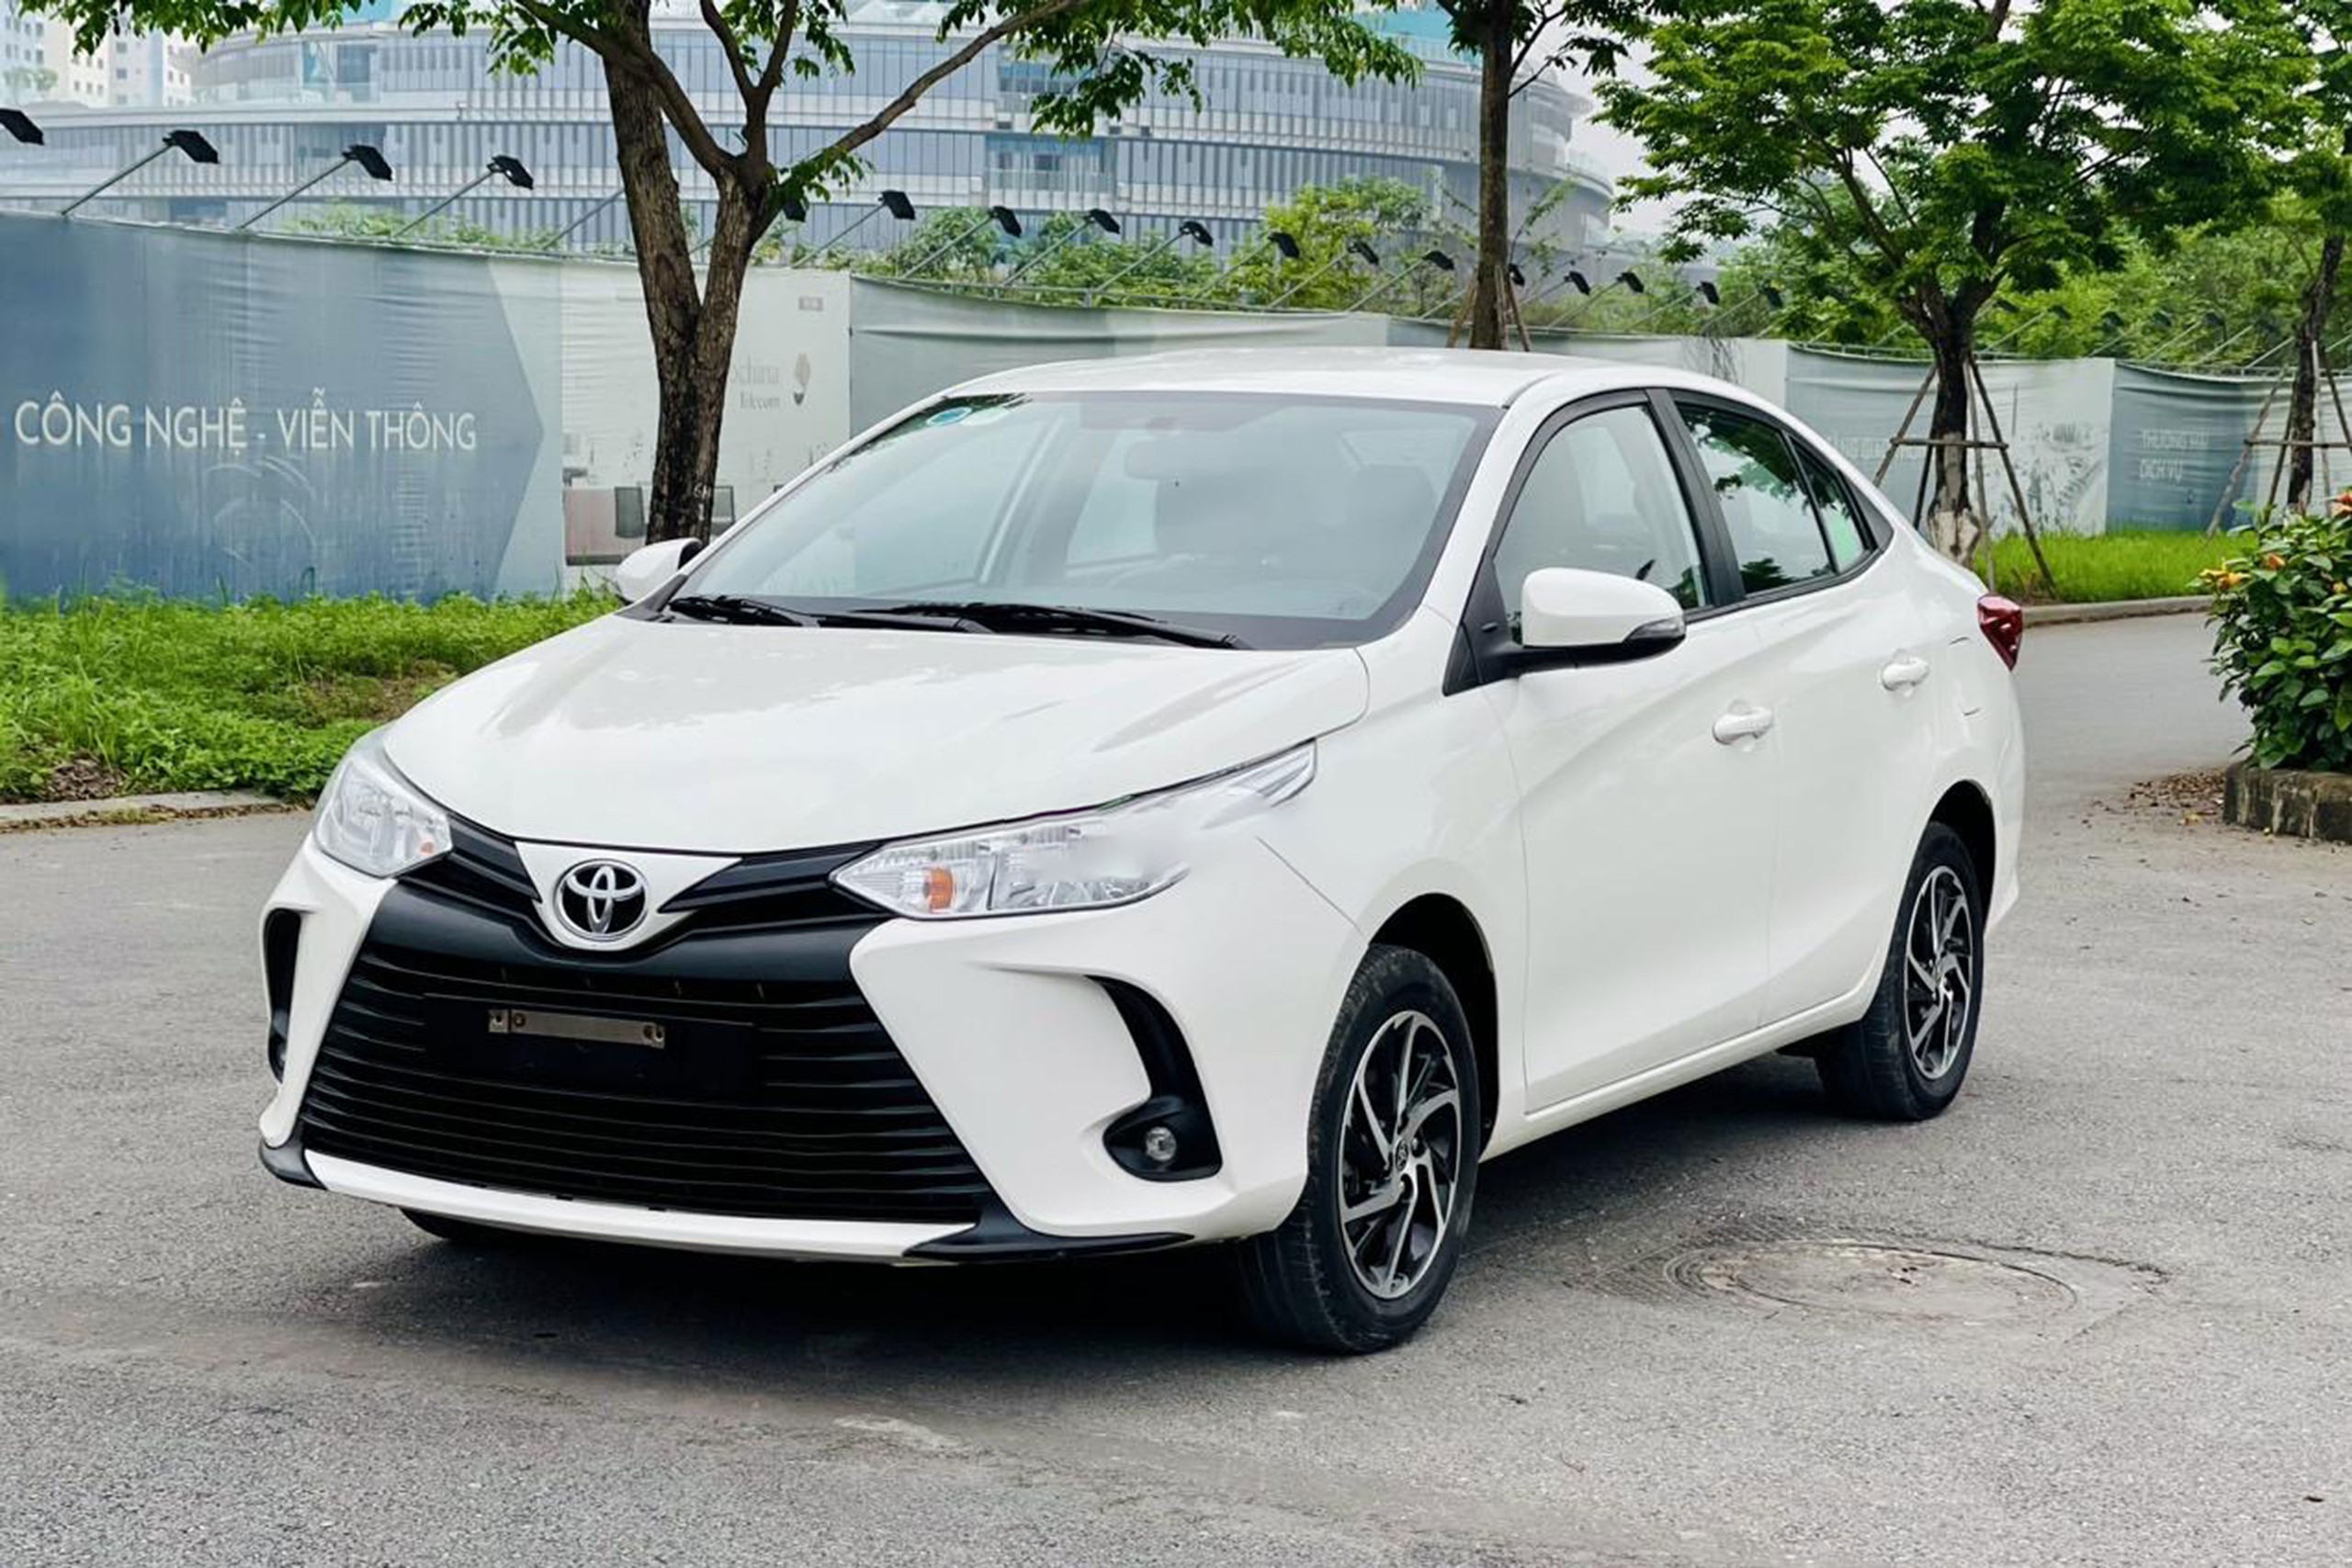 Bất ngờ giá Toyota Vios bản dịch vụ sau 3 năm lăn bánh tại Việt Nam